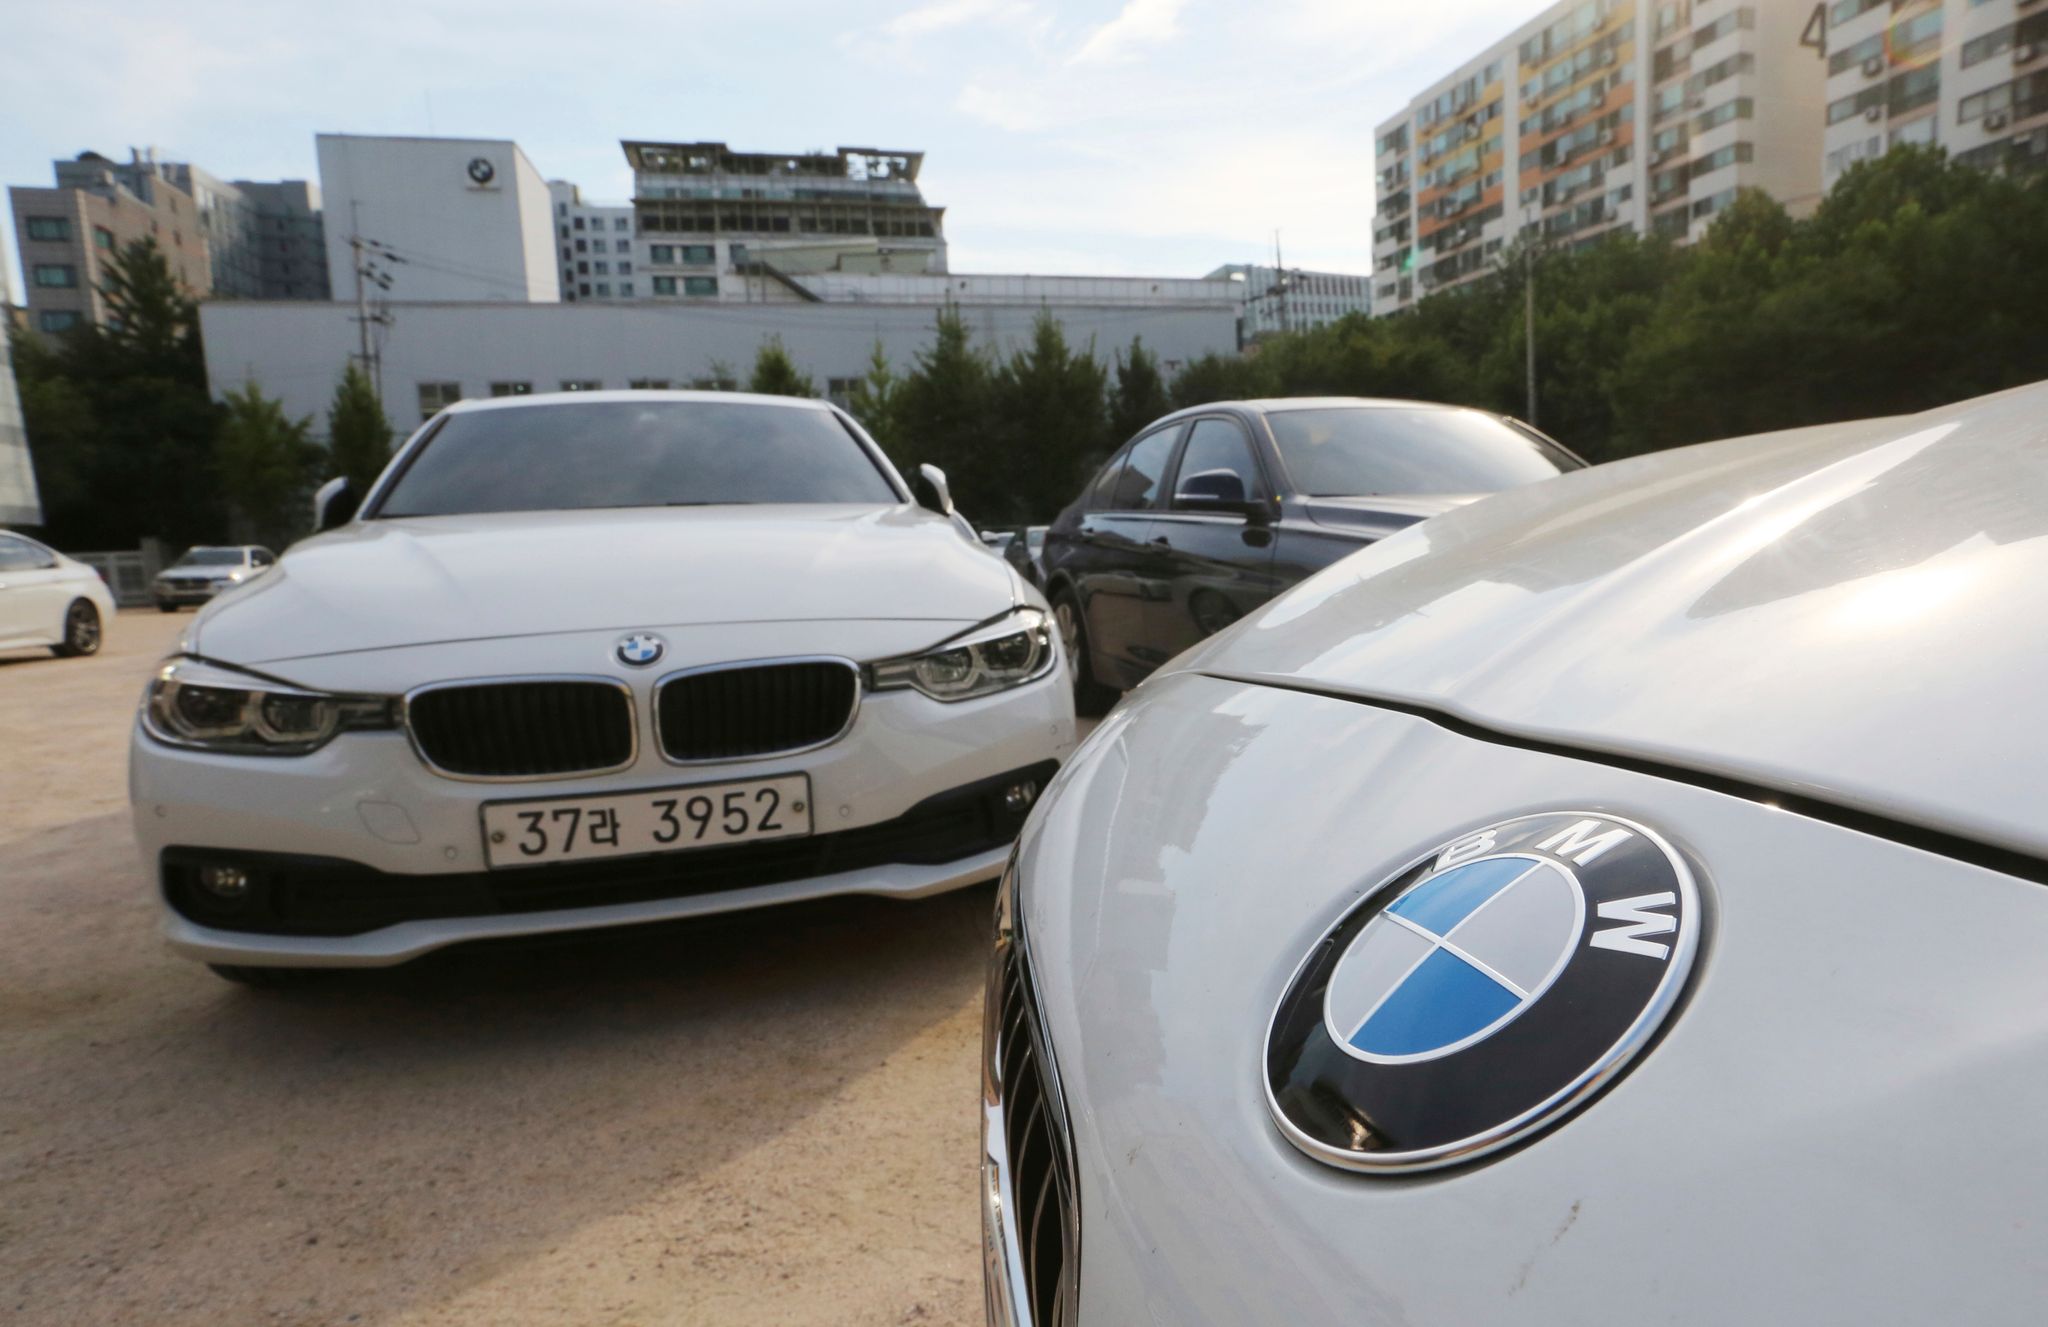 Die EU-Kommission hatte 2021 gegen BMW und Volkswagen wegen unerlaubter Absprachen zu sogenannten Adblue-Tanks hohe Strafen verhängt. Bei der Untersuchung in Südkorea ging es den Angaben der Autohersteller zufolge um die gleichen Sachverhalte.